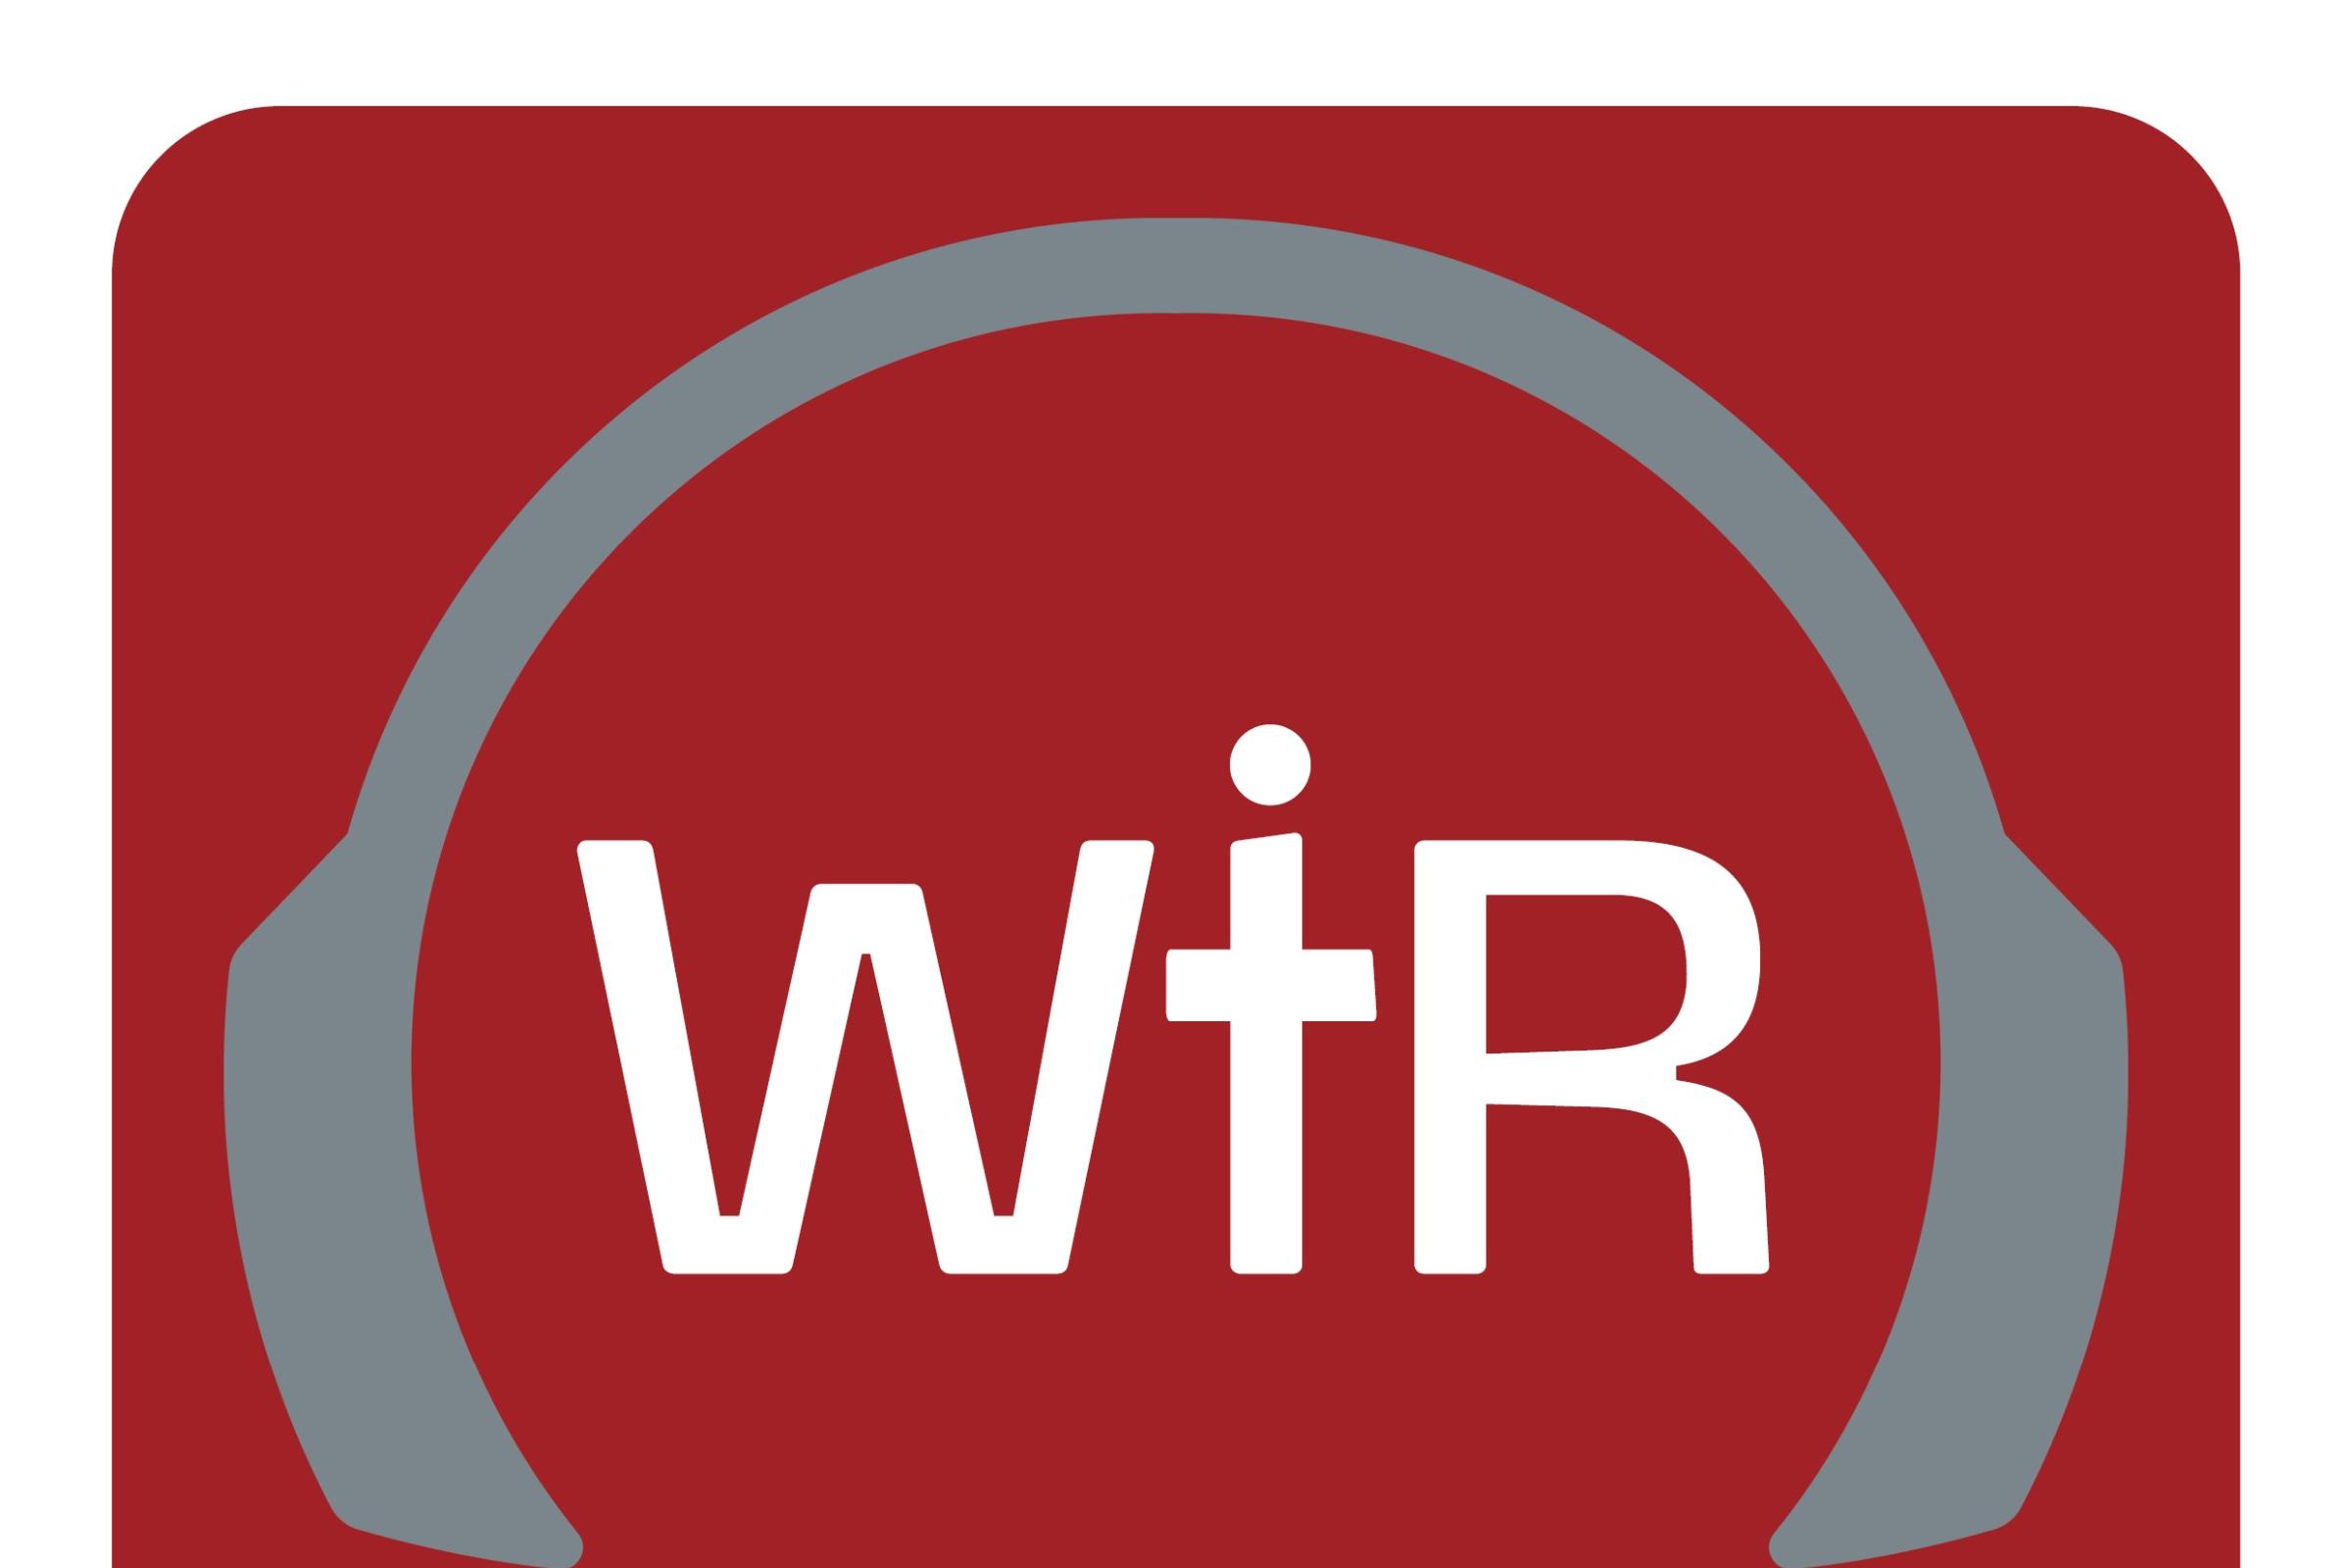 RZ Logo Podcast WIR